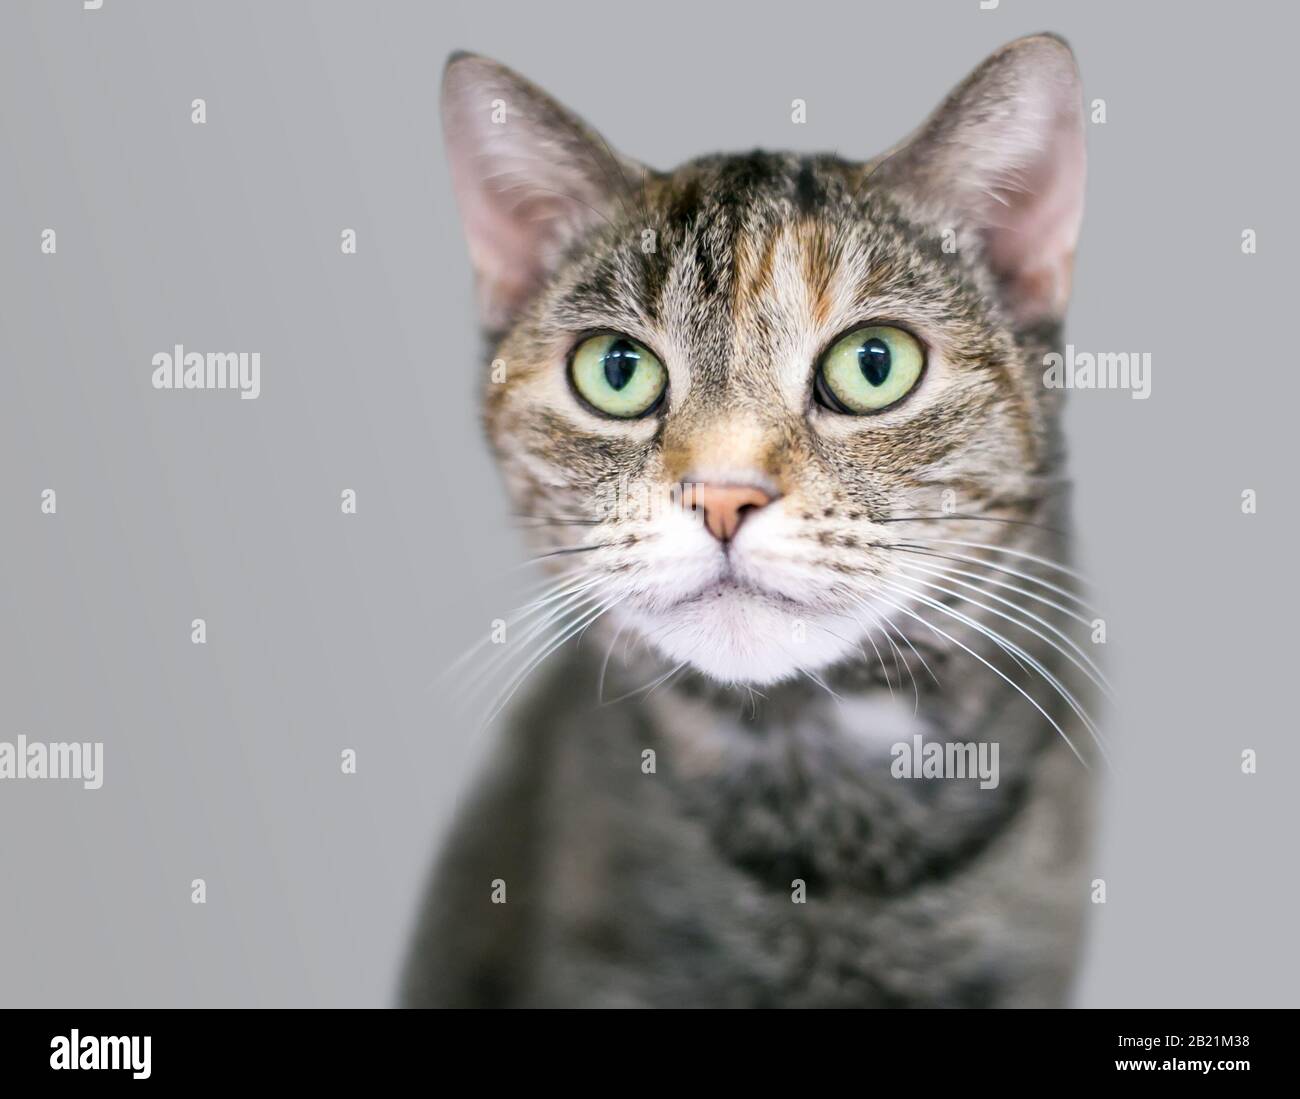 Un chat de shorthair domestique tabby de maquereau aux yeux vert clair Banque D'Images